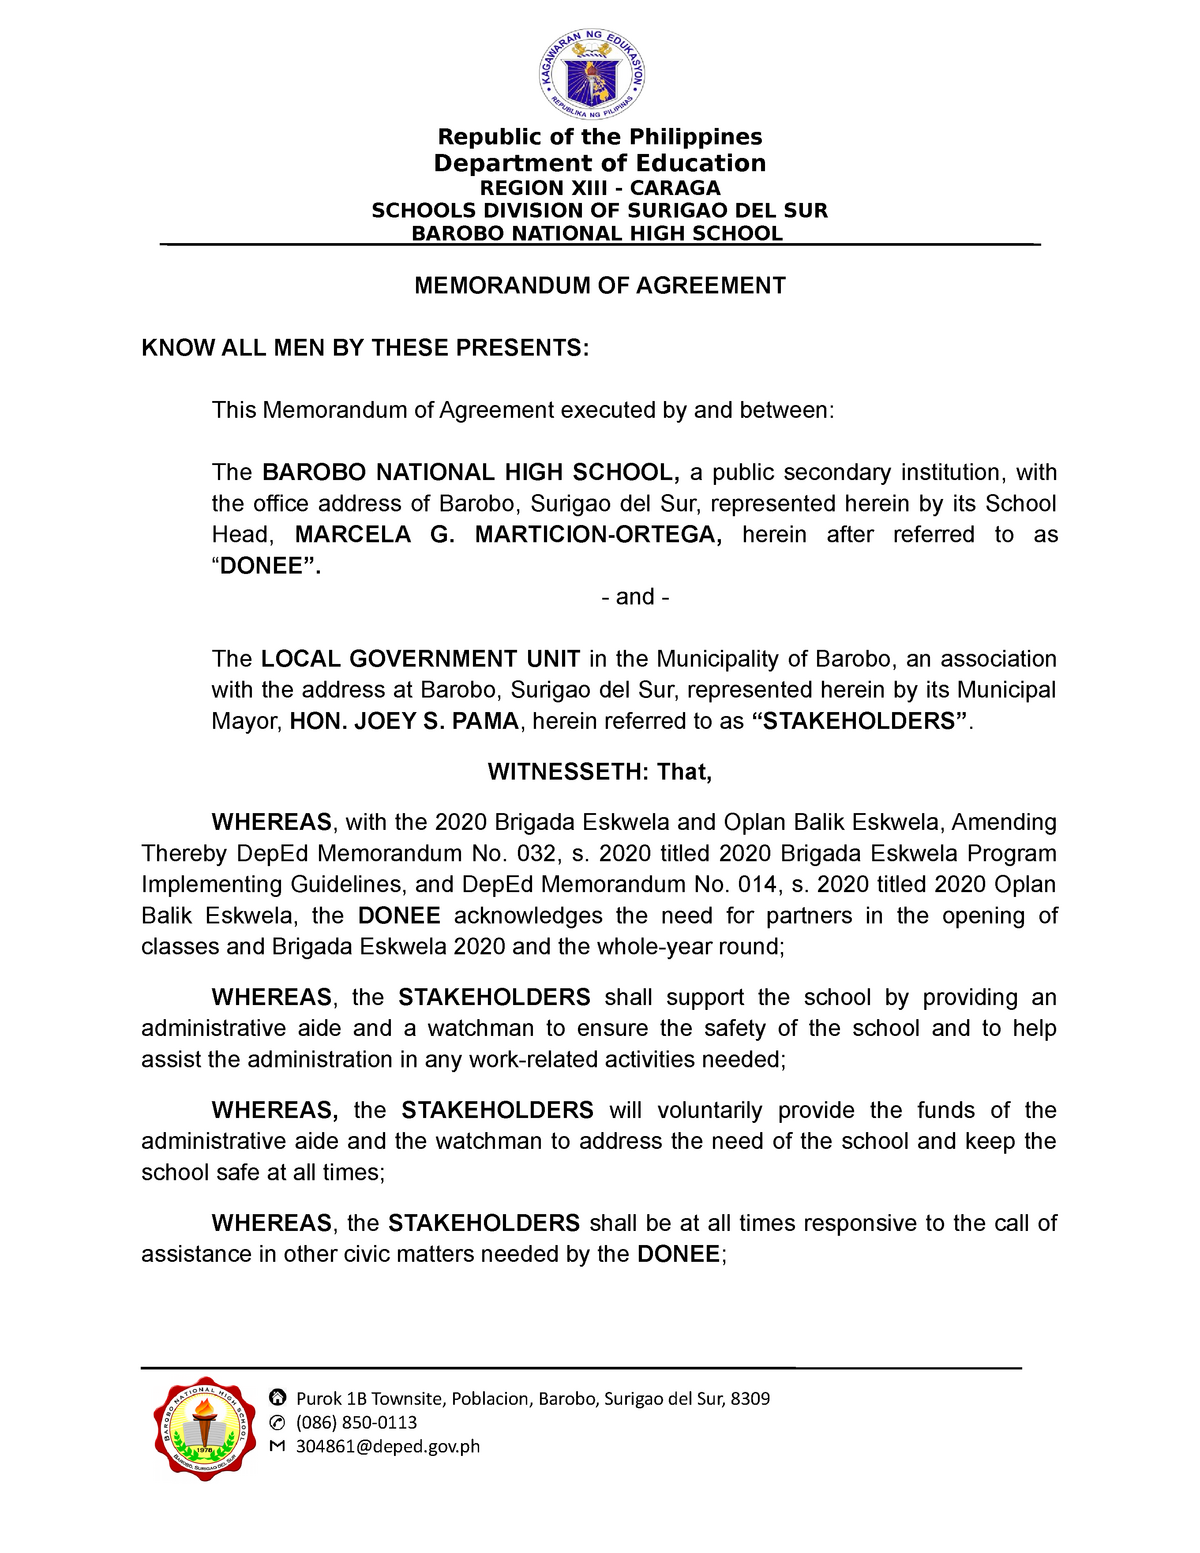 Memorandum Of Agreement Lgu Finale Republic Of The Philippines Department Of Education Region 5102